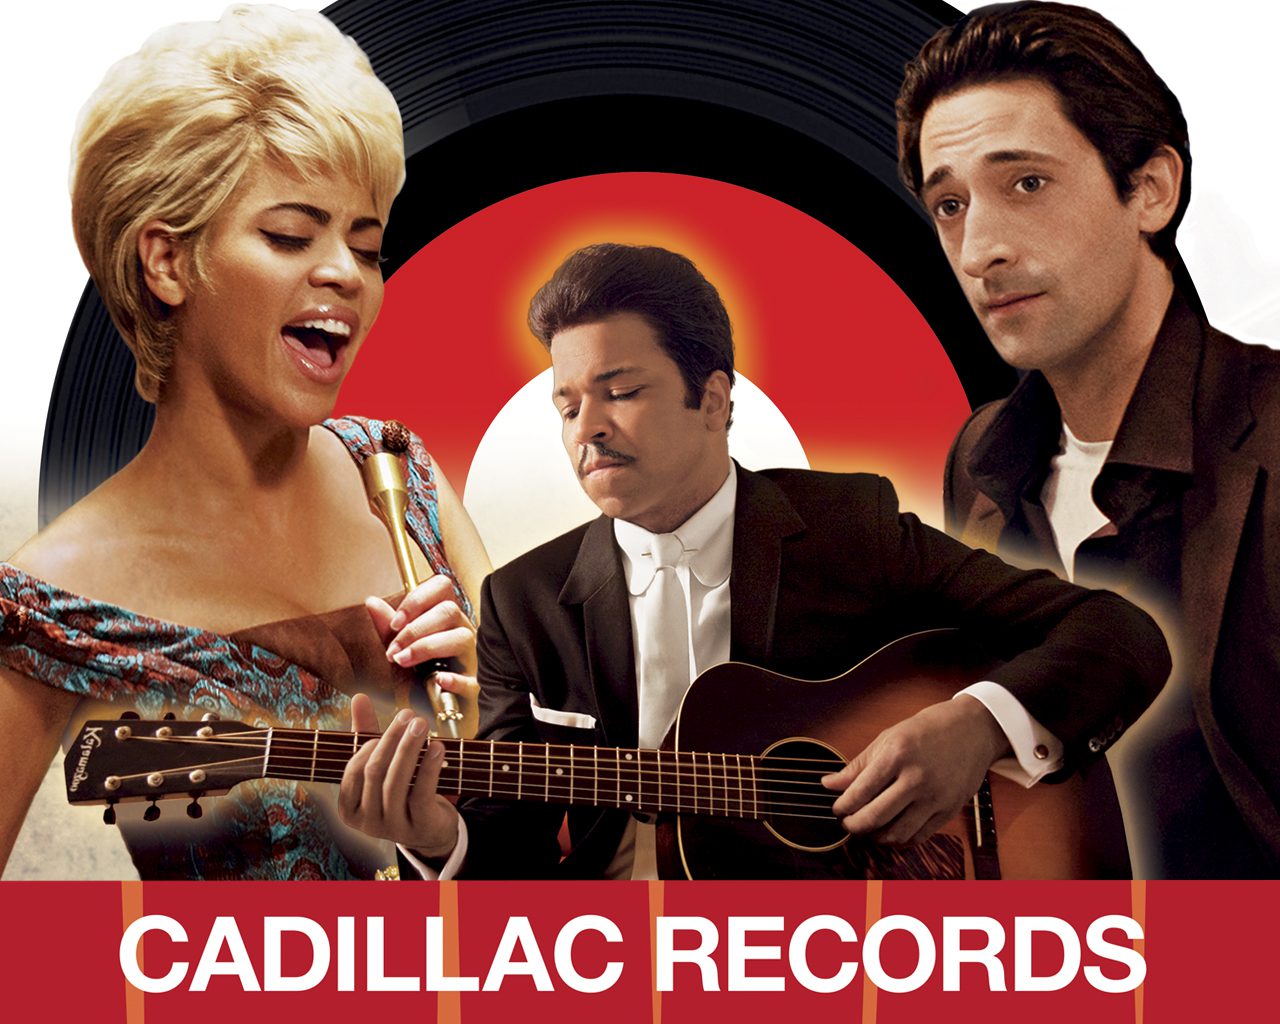 Cadillac Records- Full Movie1280 x 1024